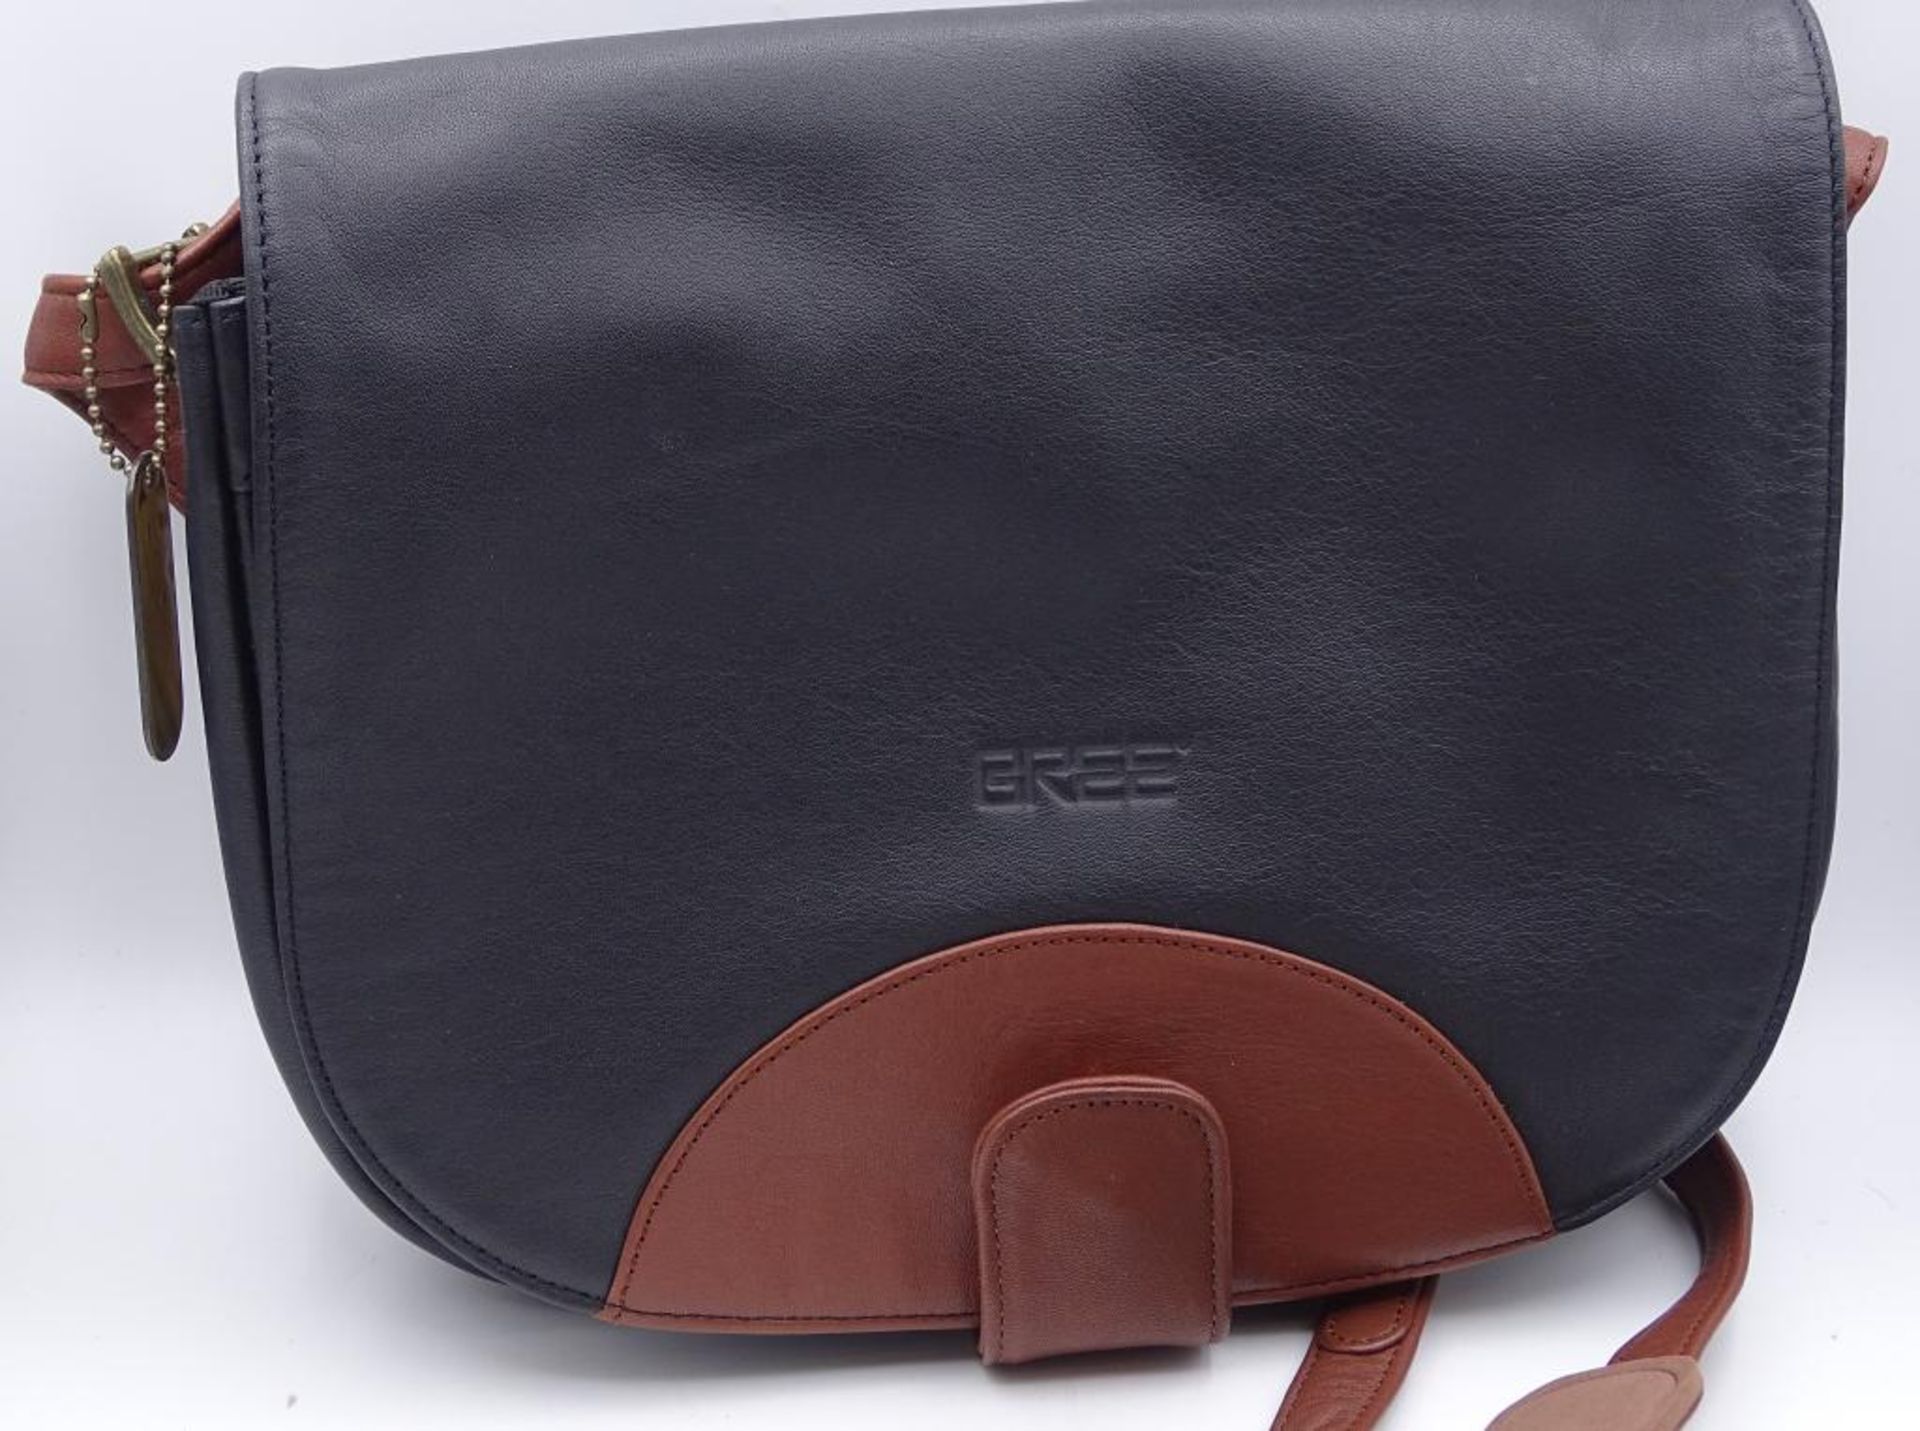 Damen Handtasche, "Bree",schwarz/braun, neuwertiger Zustand,27x23cm - Bild 2 aus 6